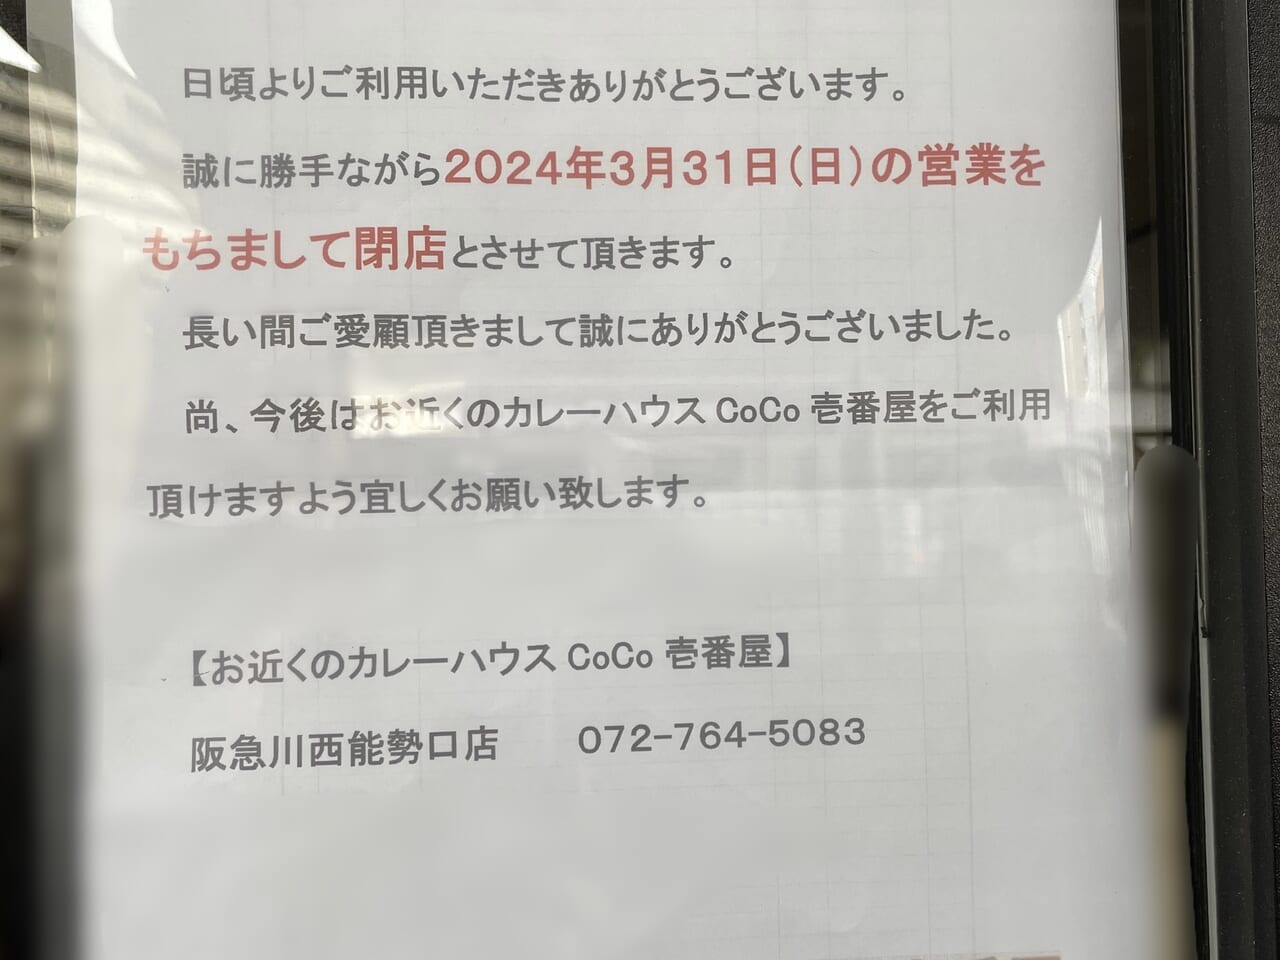 「カレーハウスCoCo壱番屋 阪急池田駅前店」閉店